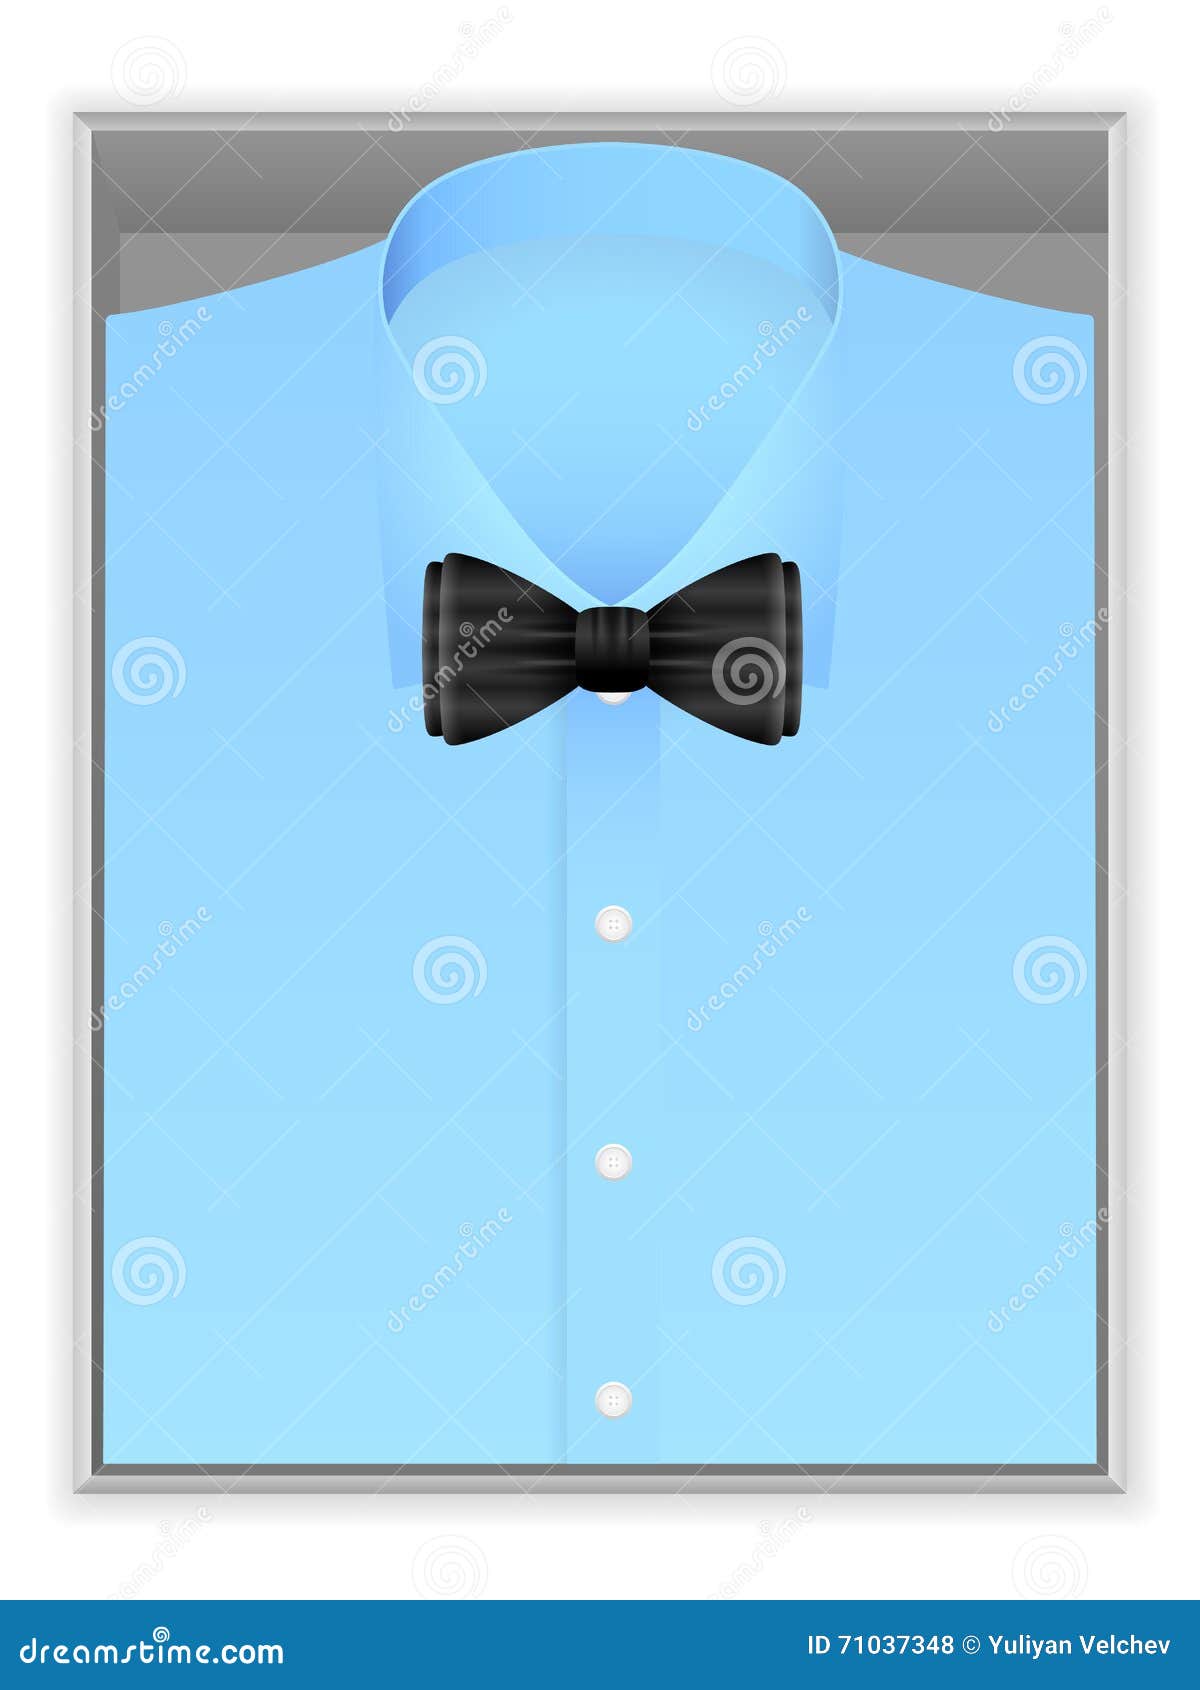 Clips de lazo de la forma del avión de los hombres de lazo clip piloto de negocios hombres corbata clip gemelos corbata corchete de los hombres trajes de boda regalo de corbata clips